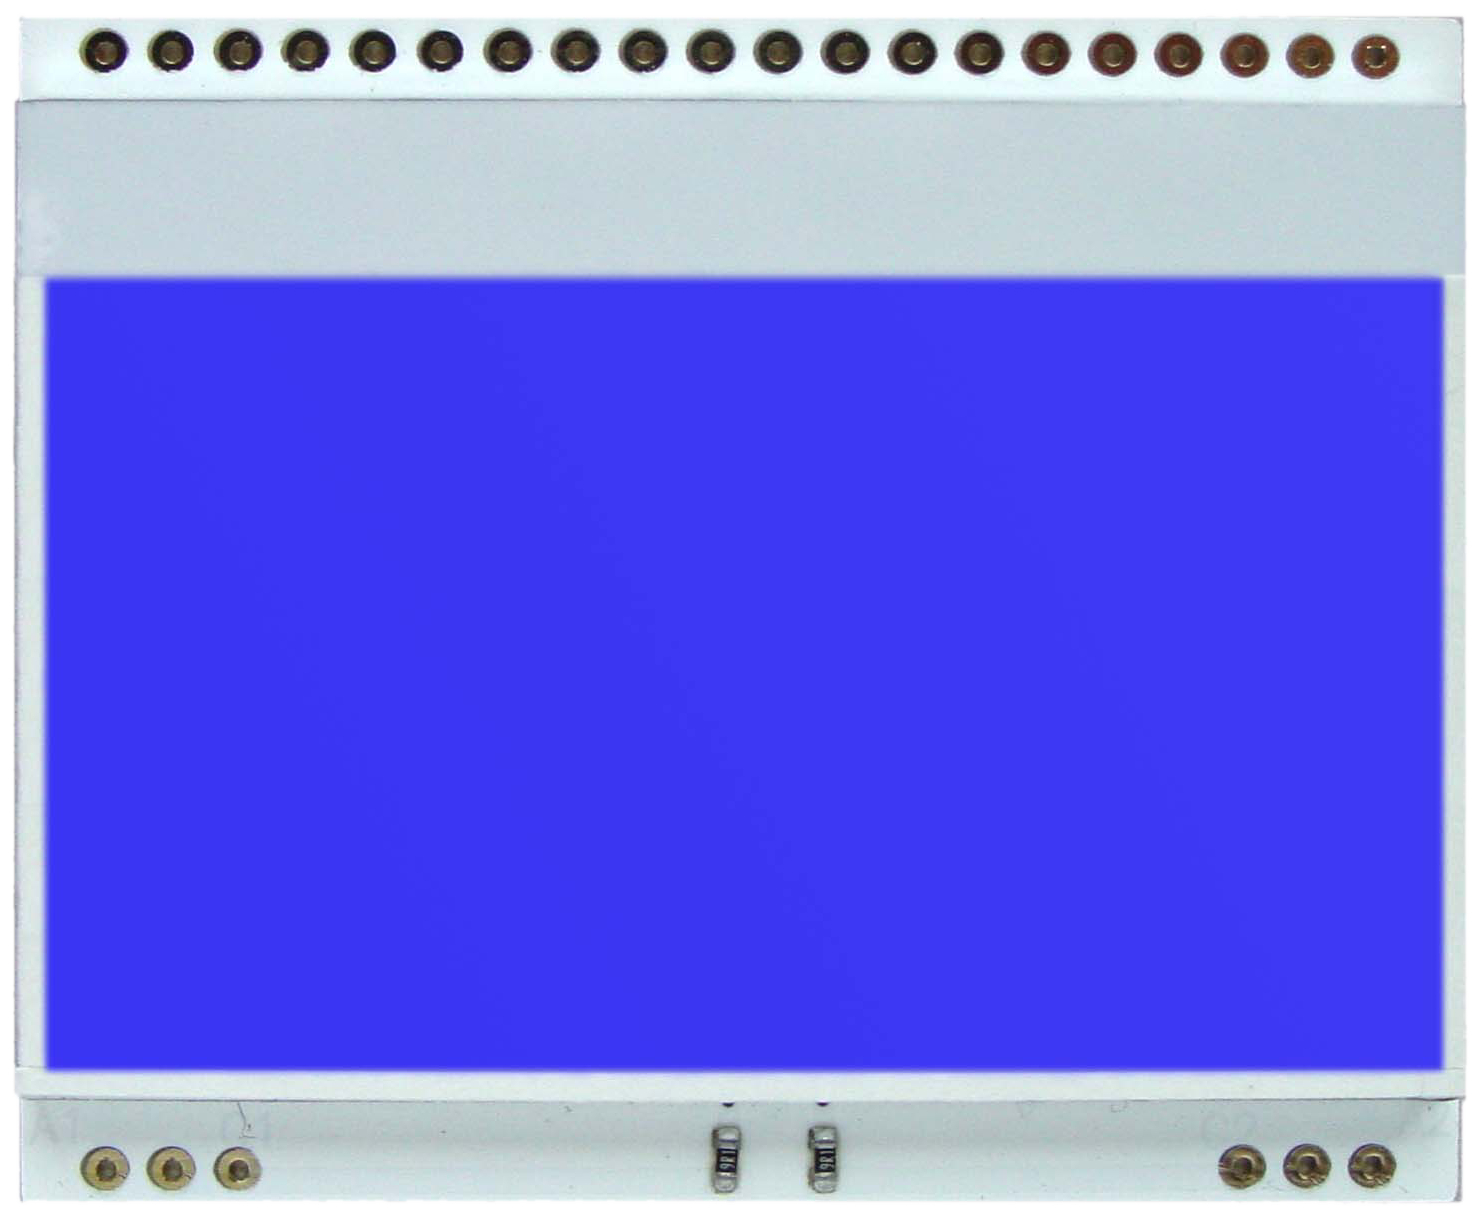 LED backlit unit for EA DOGM128-6, blue